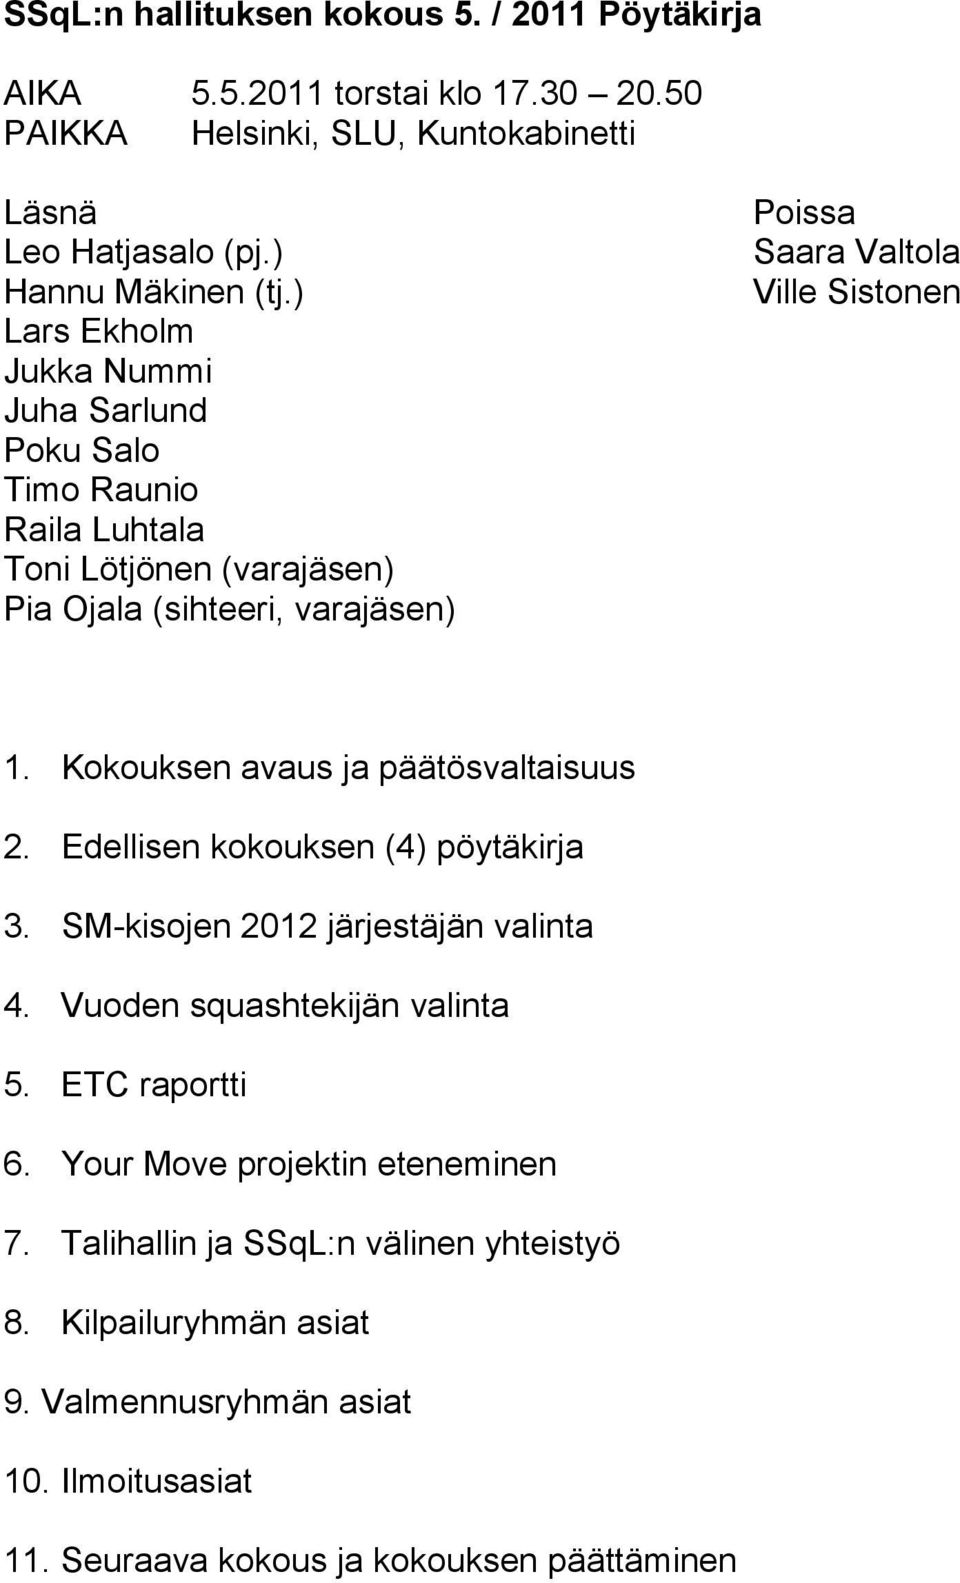 Kokouksen avaus ja päätösvaltaisuus 2. Edellisen kokouksen (4) pöytäkirja 3. SM-kisojen 2012 järjestäjän valinta 4. Vuoden squashtekijän valinta 5. ETC raportti 6.